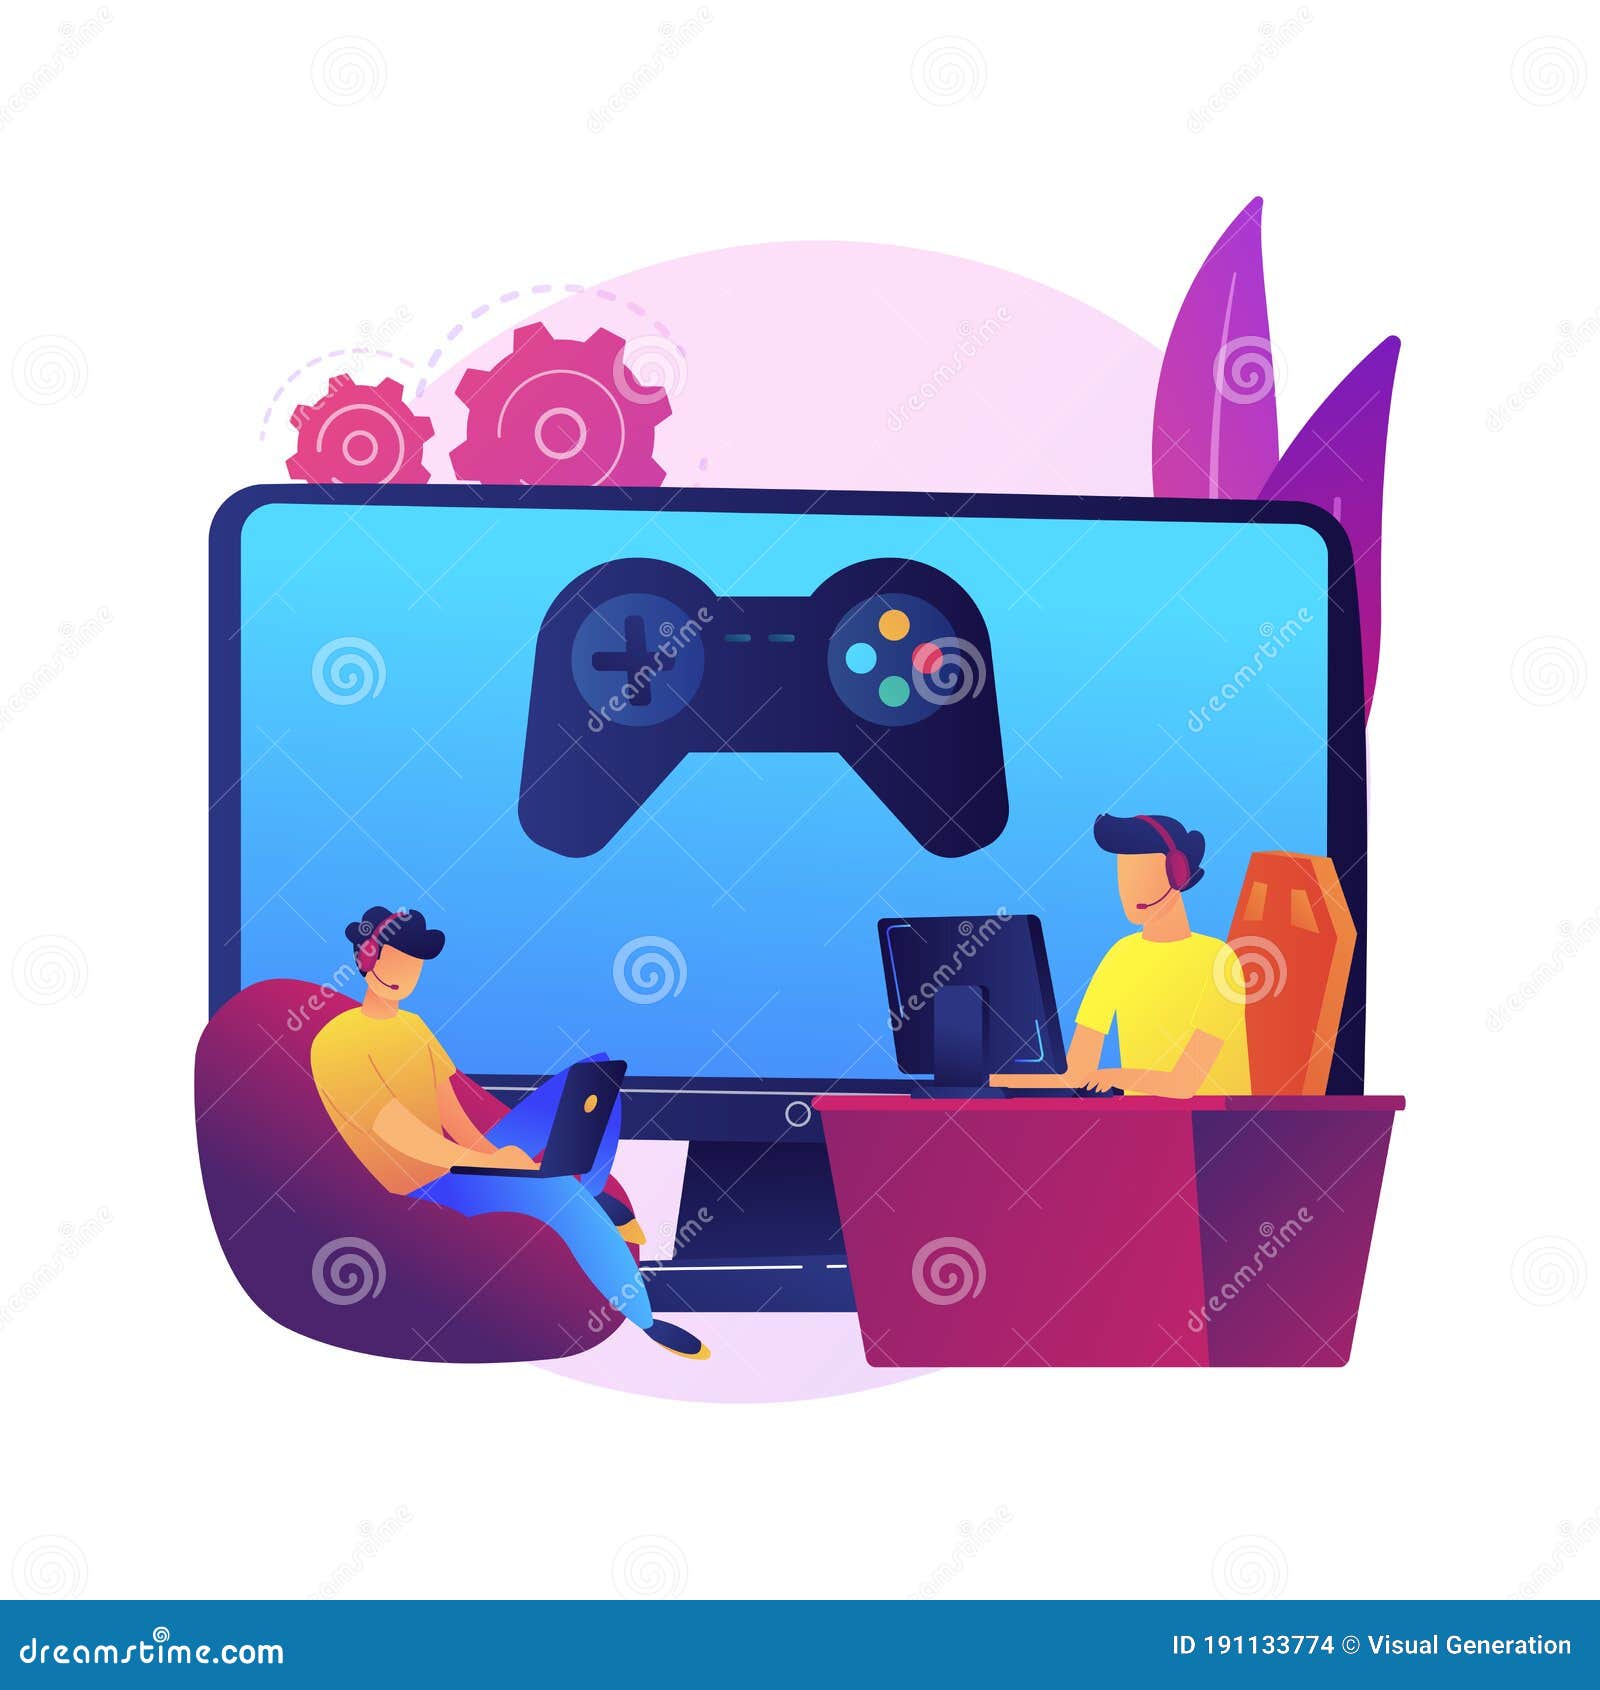 Ilustração do conceito de jogos online com computador